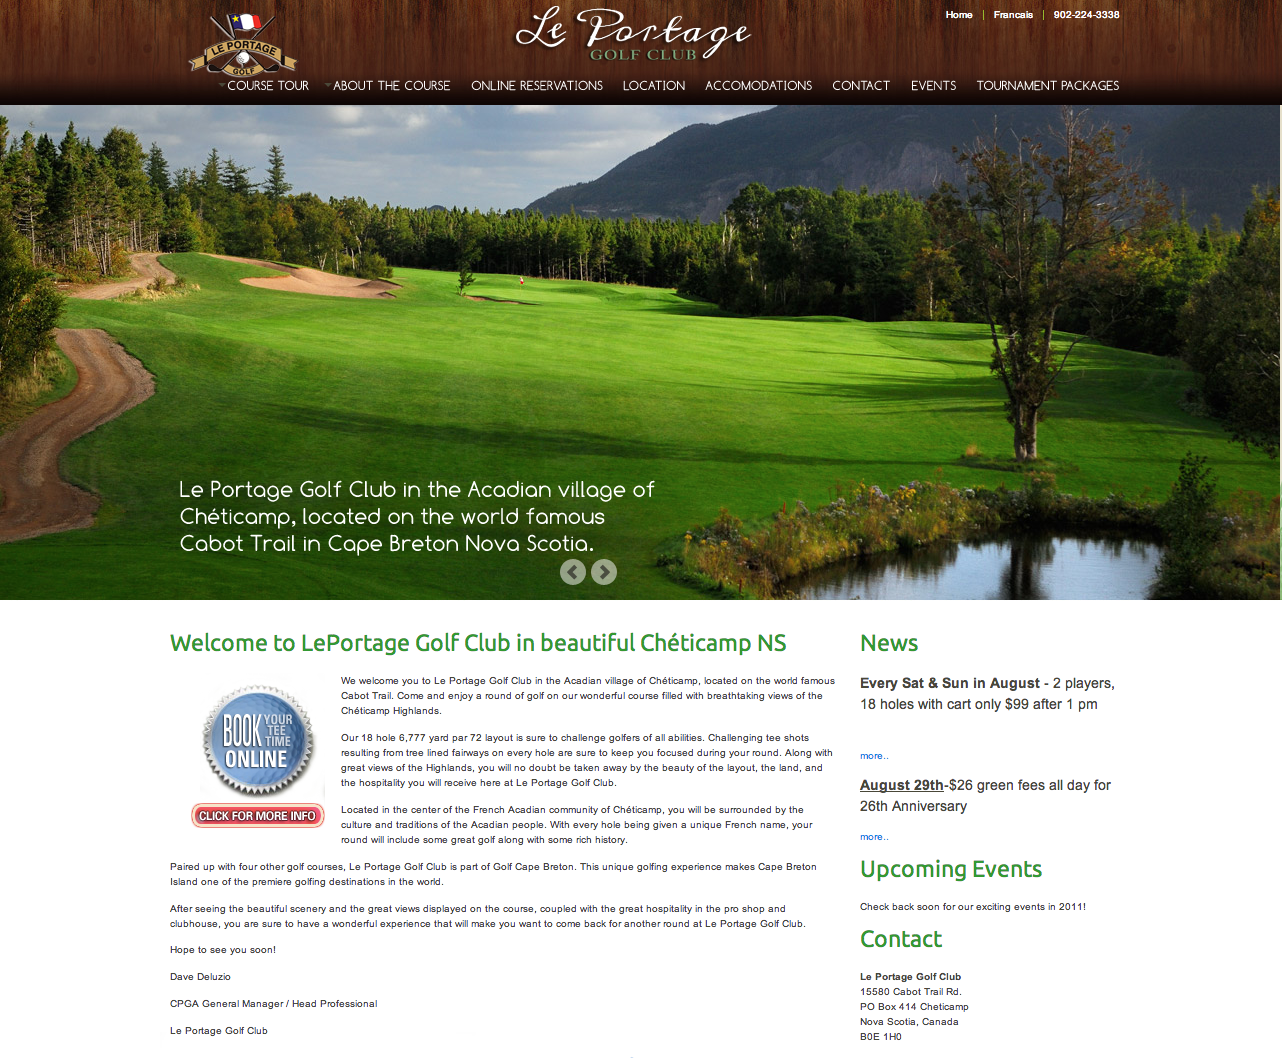 Le Portage Golf Club